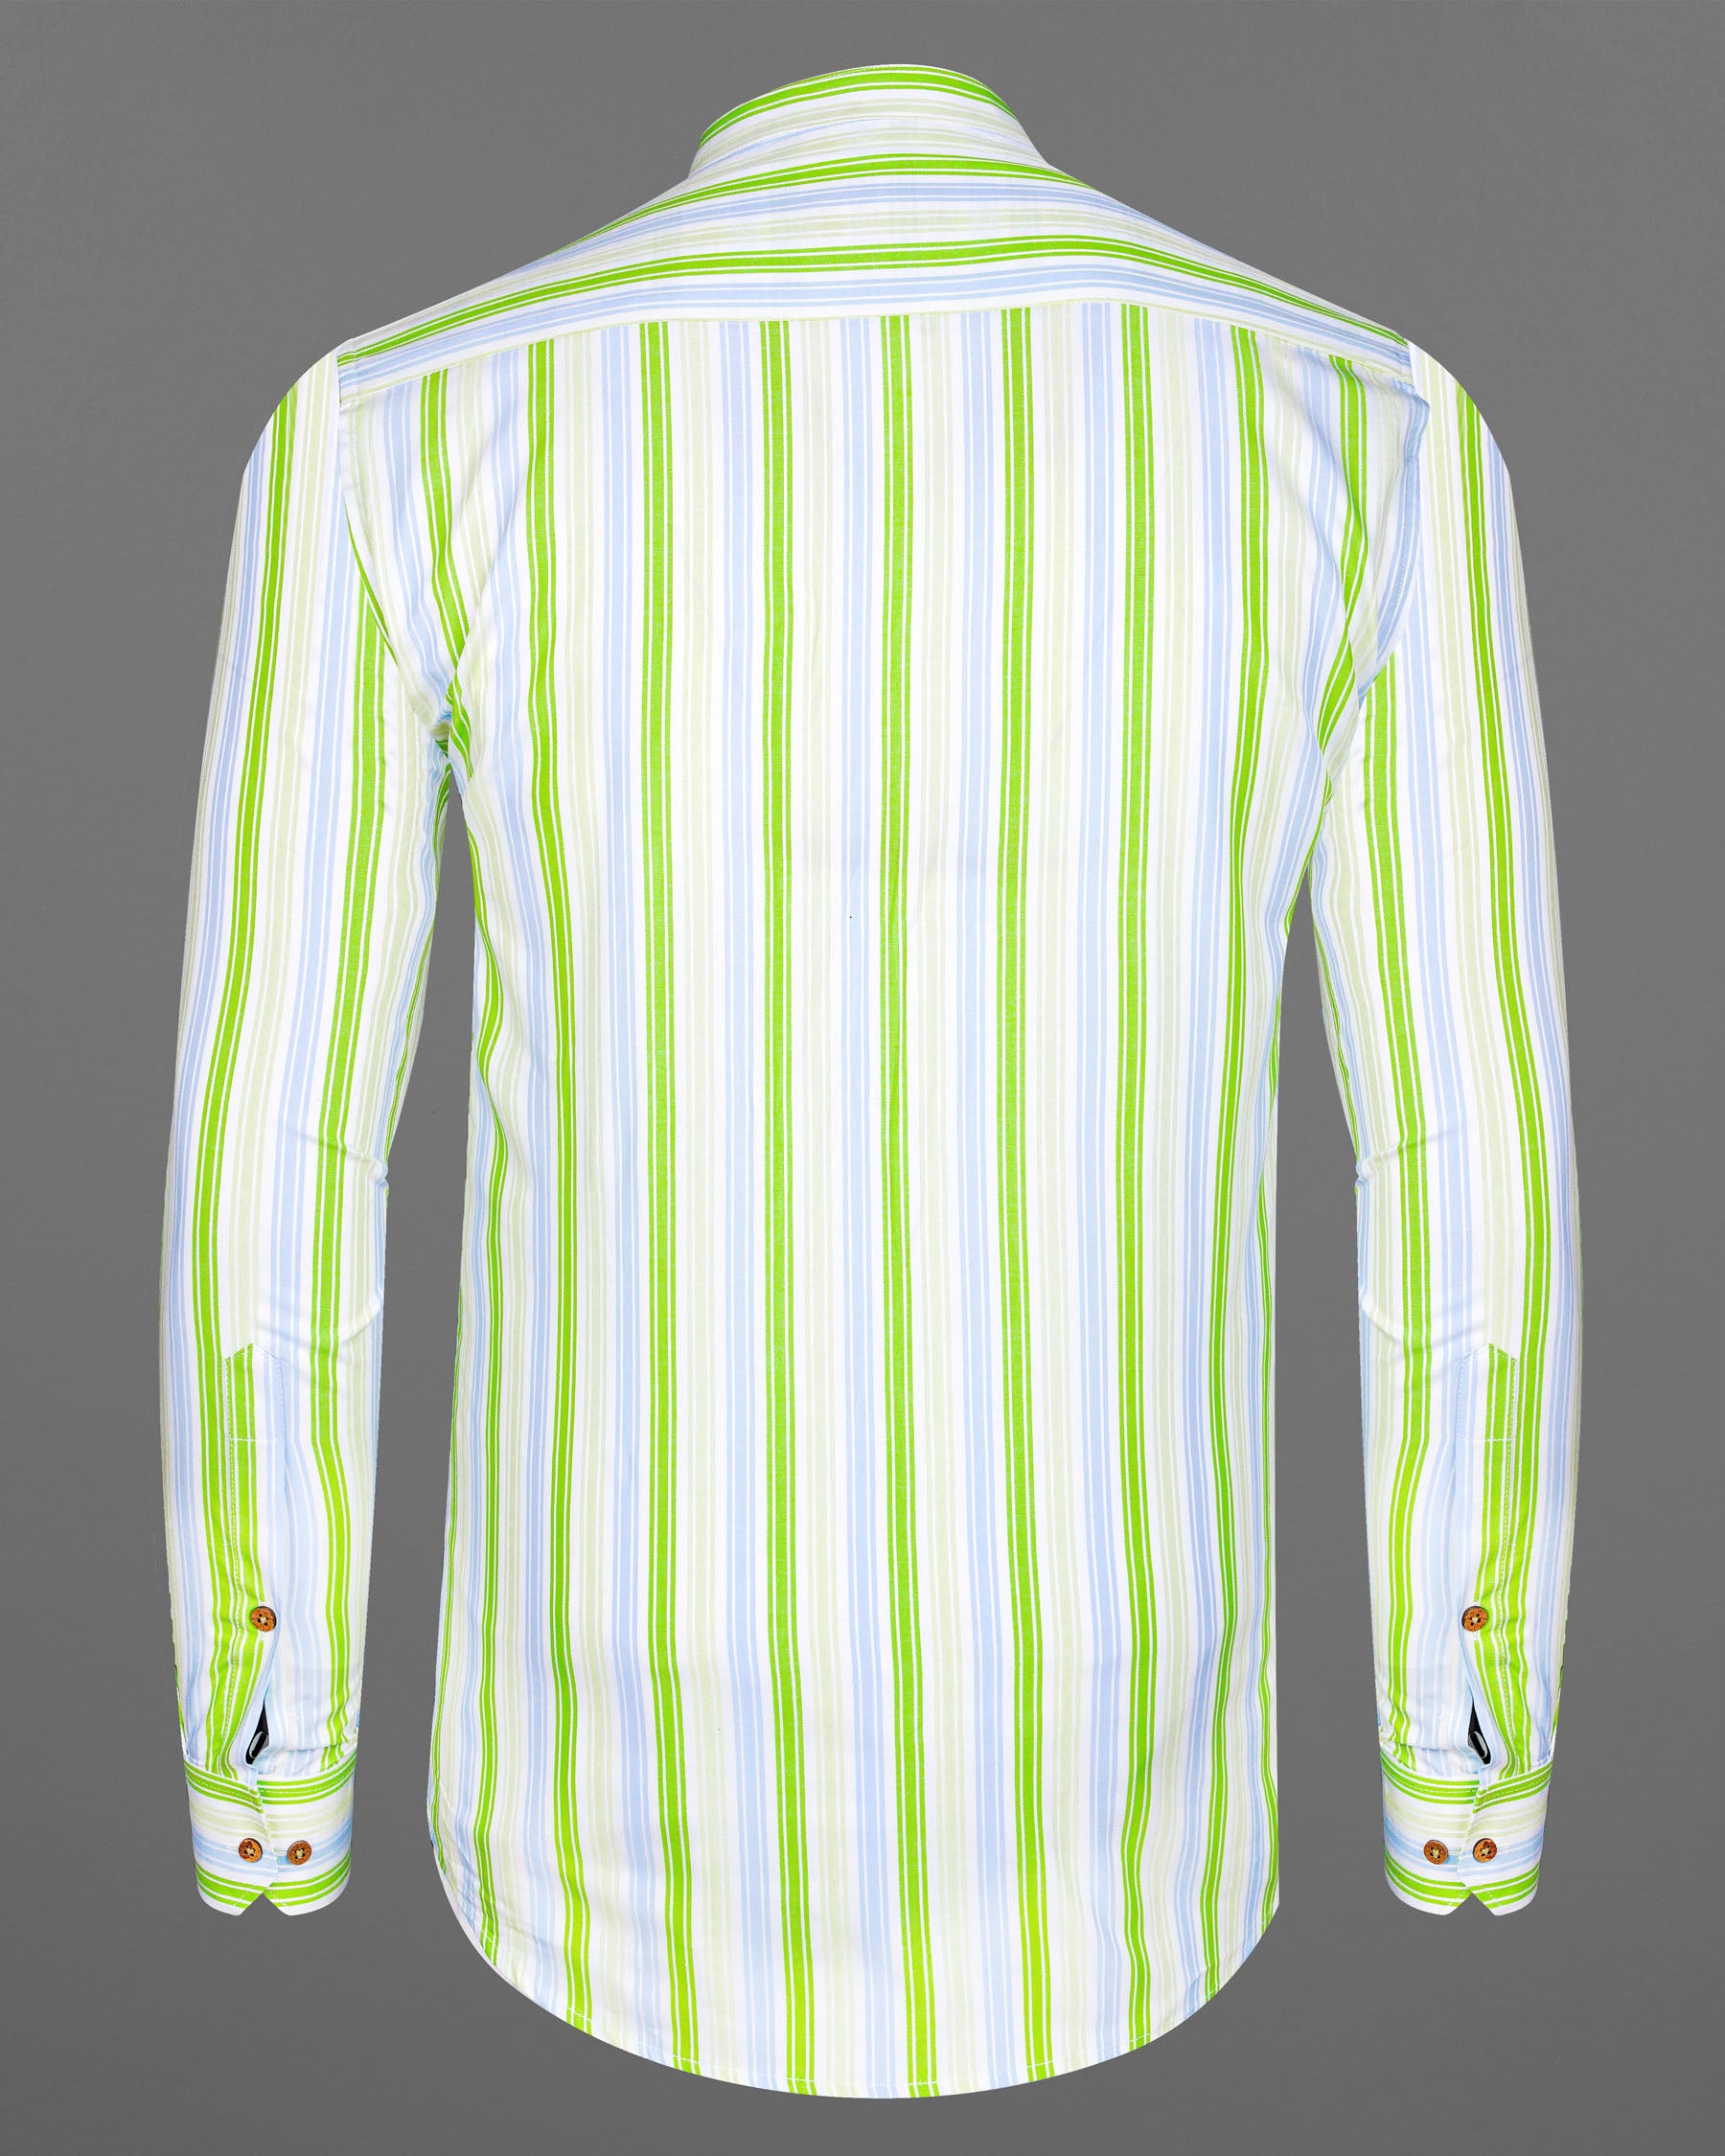 Conifer Green and Bright White Striped Dobby Textured Premium Giza Cotton Kurta Shirt 7853-KS-38, 7853-KS-H-38, 7853-KS-39,7853-KS-H-39, 7853-KS-40, 7853-KS-H-40, 7853-KS-42, 7853-KS-H-42, 7853-KS-44, 7853-KS-H-44, 7853-KS-46, 7853-KS-H-46, 7853-KS-48, 7853-KS-H-48, 7853-KS-50, 7853-KS-H-50, 7853-KS-52, 7853-KS-H-52